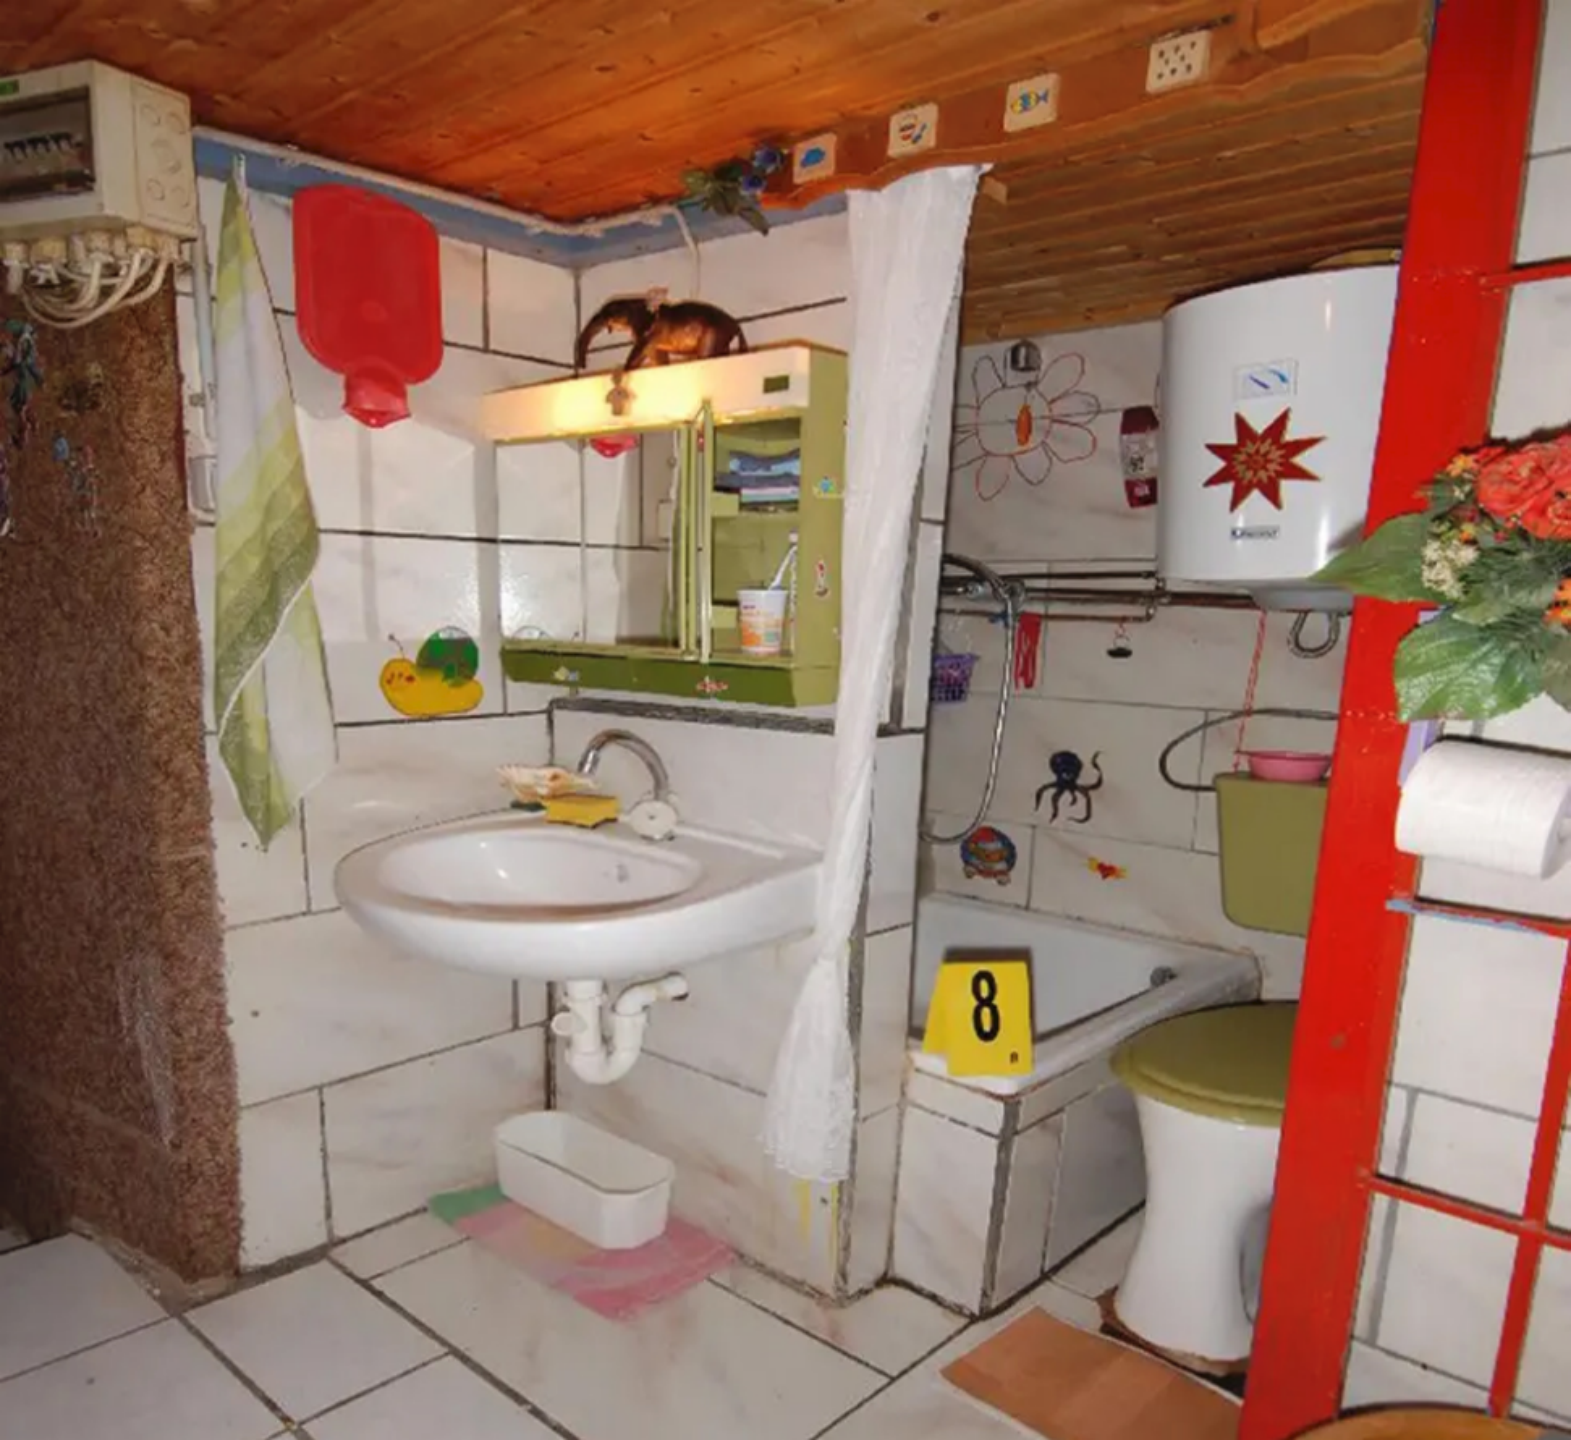 图 4：地下室简陋的洗手间